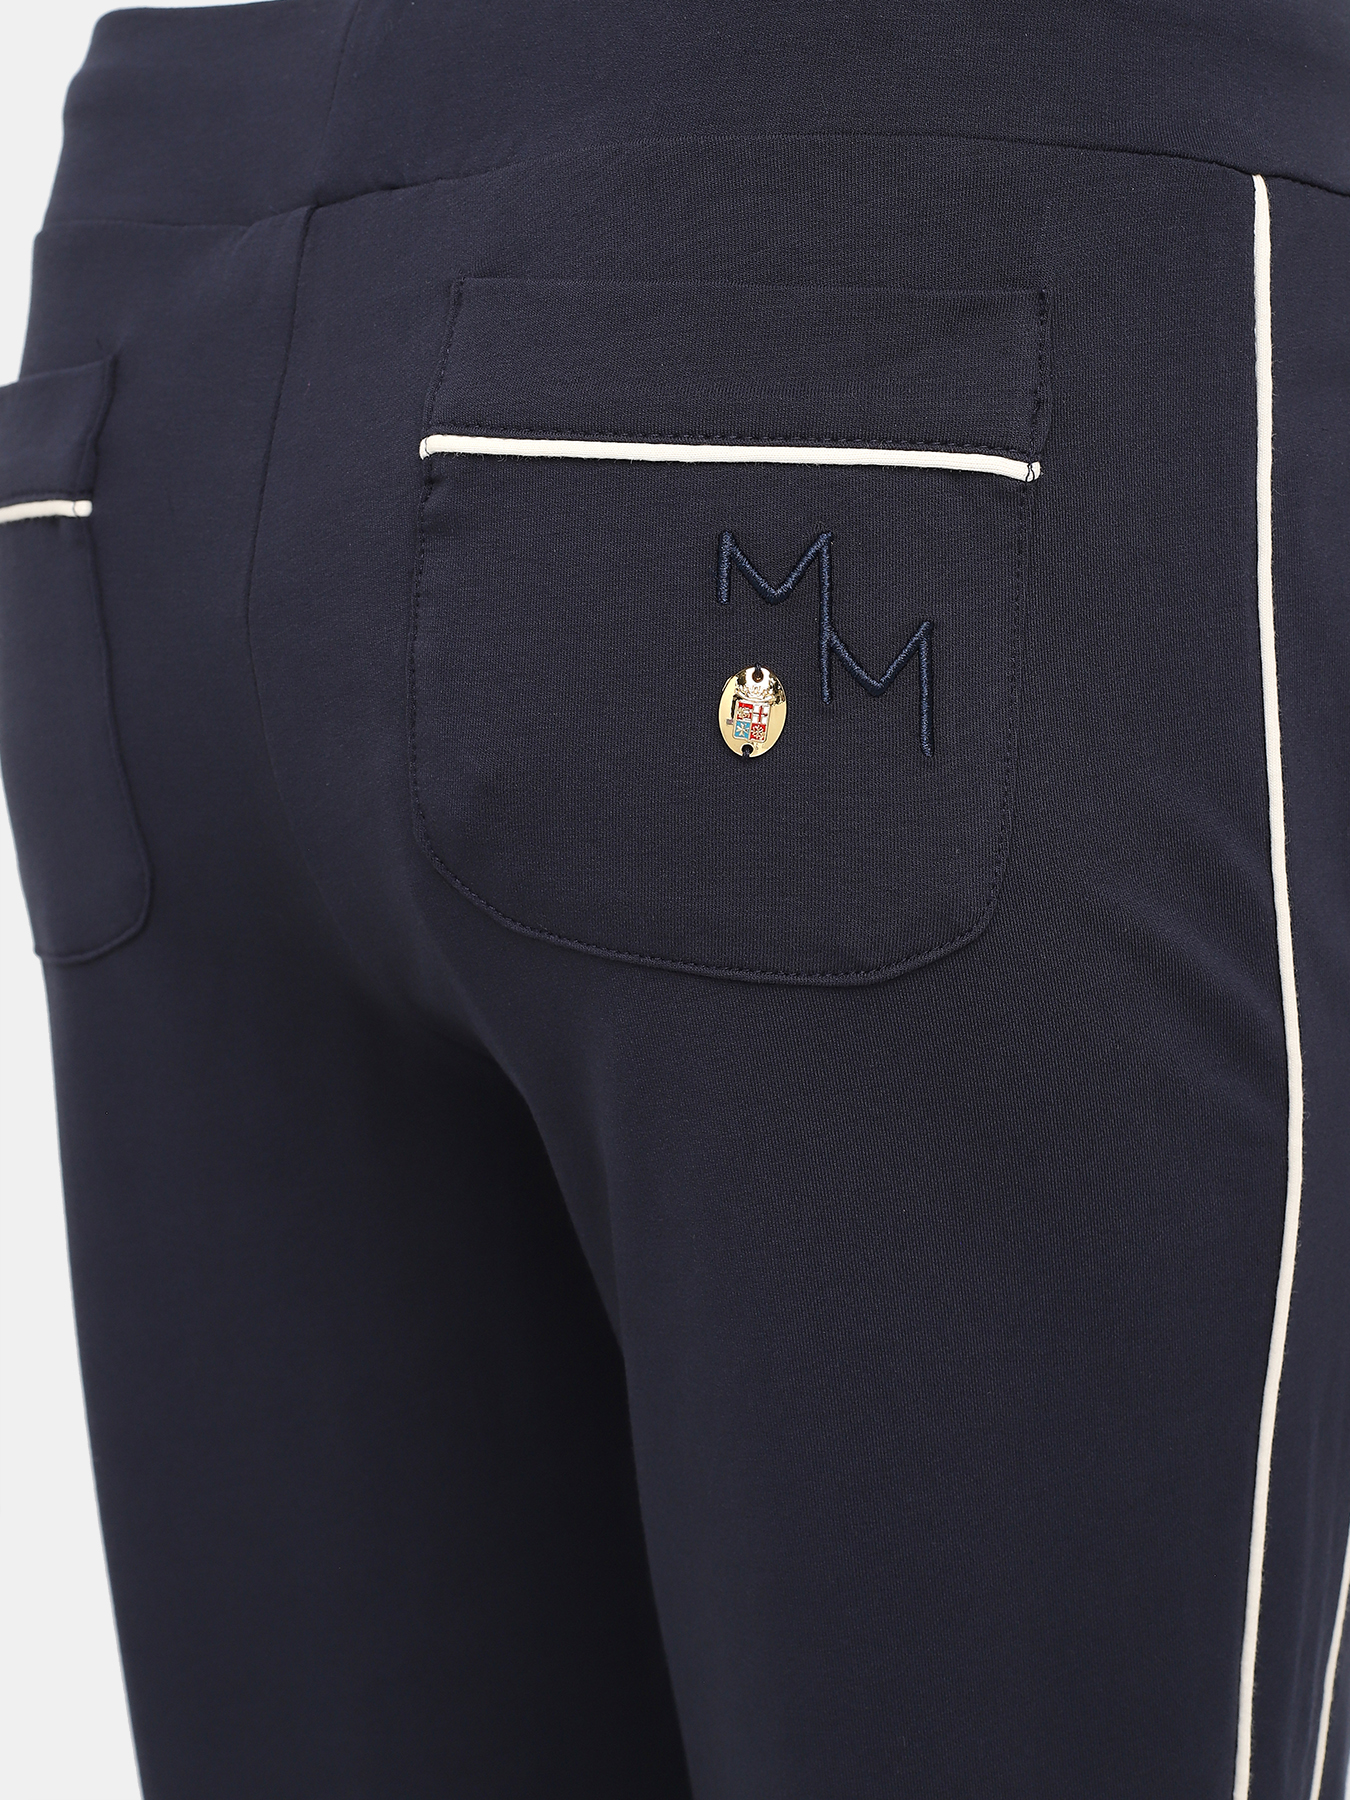 Спортивные брюки Marina Militare 425546-045, цвет синий, размер 48-50 - фото 3